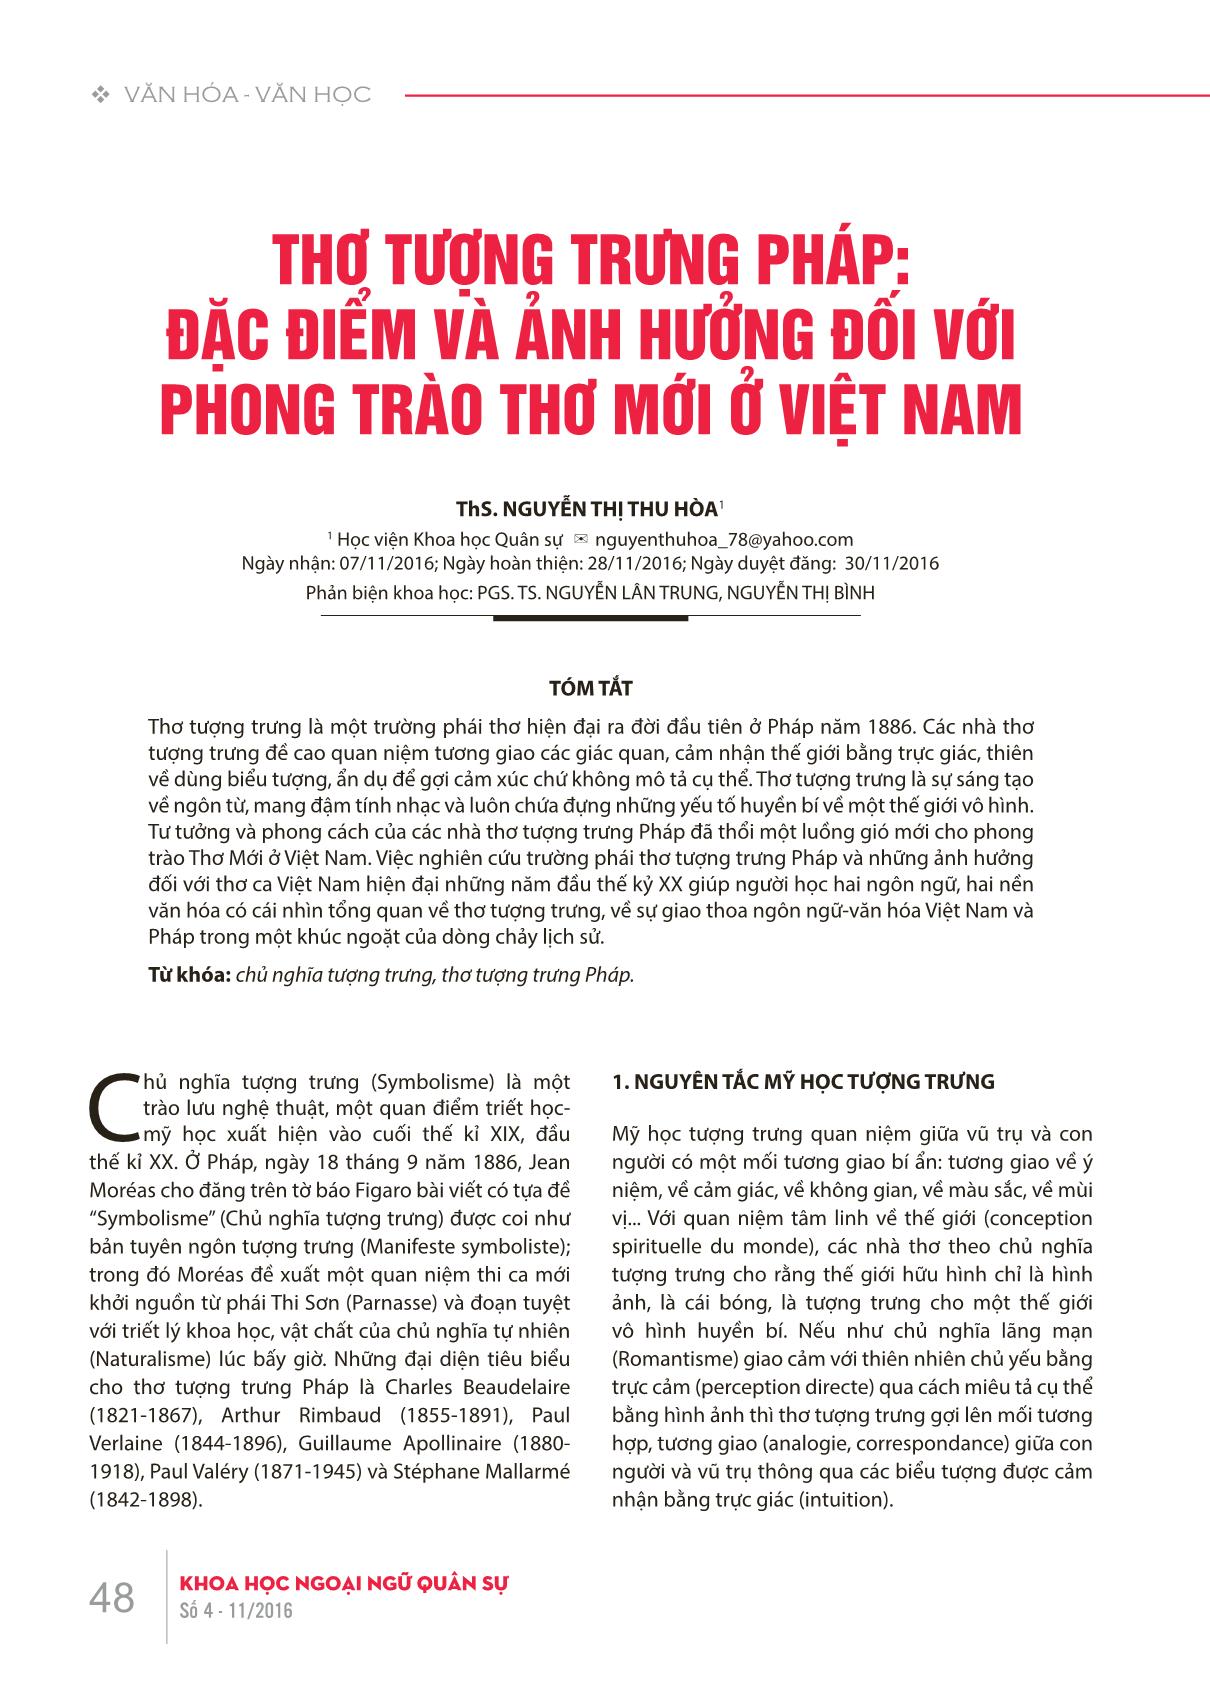 Thơ tượng trưng Pháp: Đặc điểm và ảnh hưởng đối với phong trào thơ mới ở Việt Nam trang 1